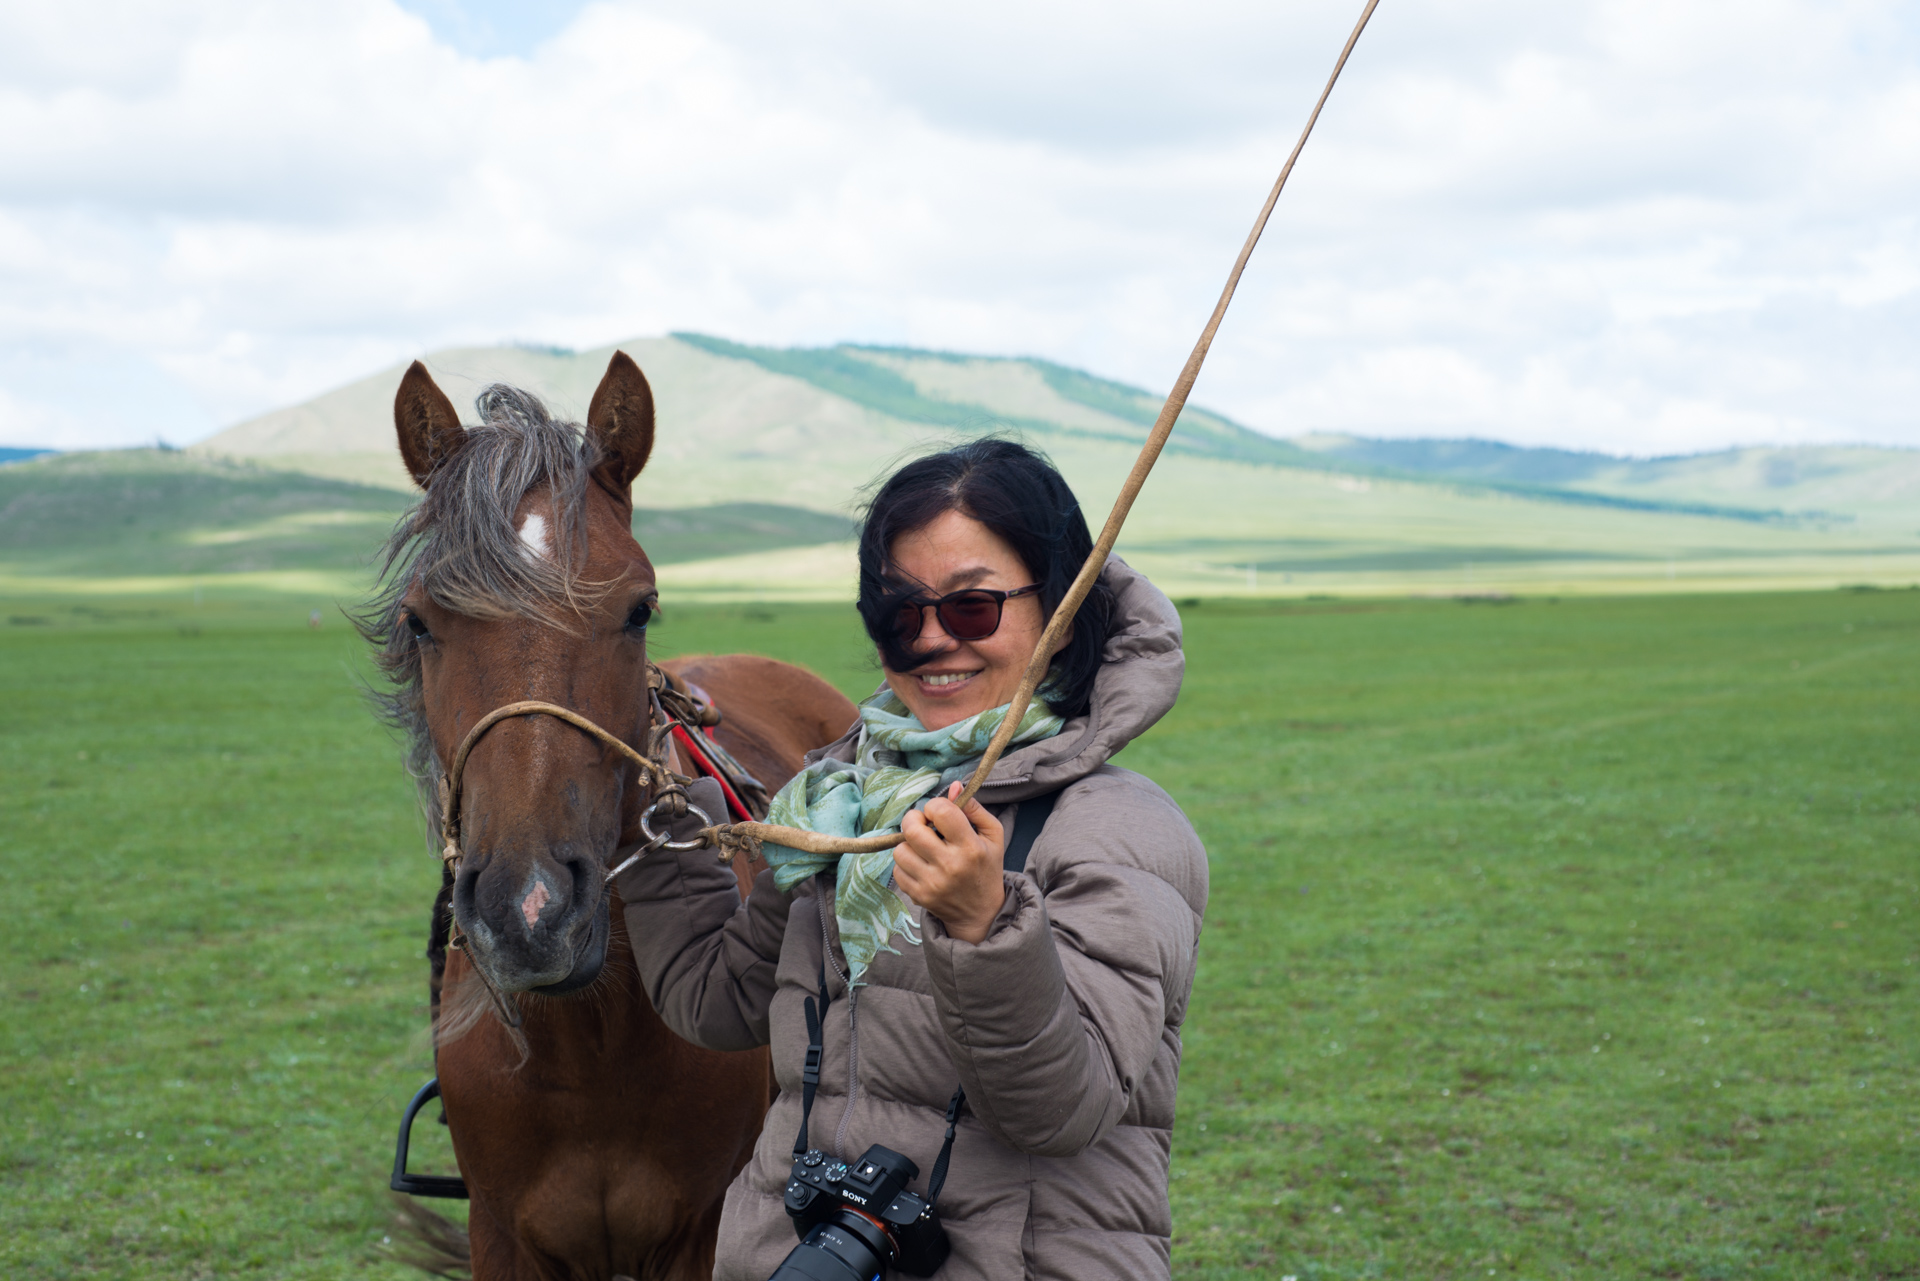 150802_471.jpg : 몽골 학습탐사 2진 사진 8월2일_1 ...자